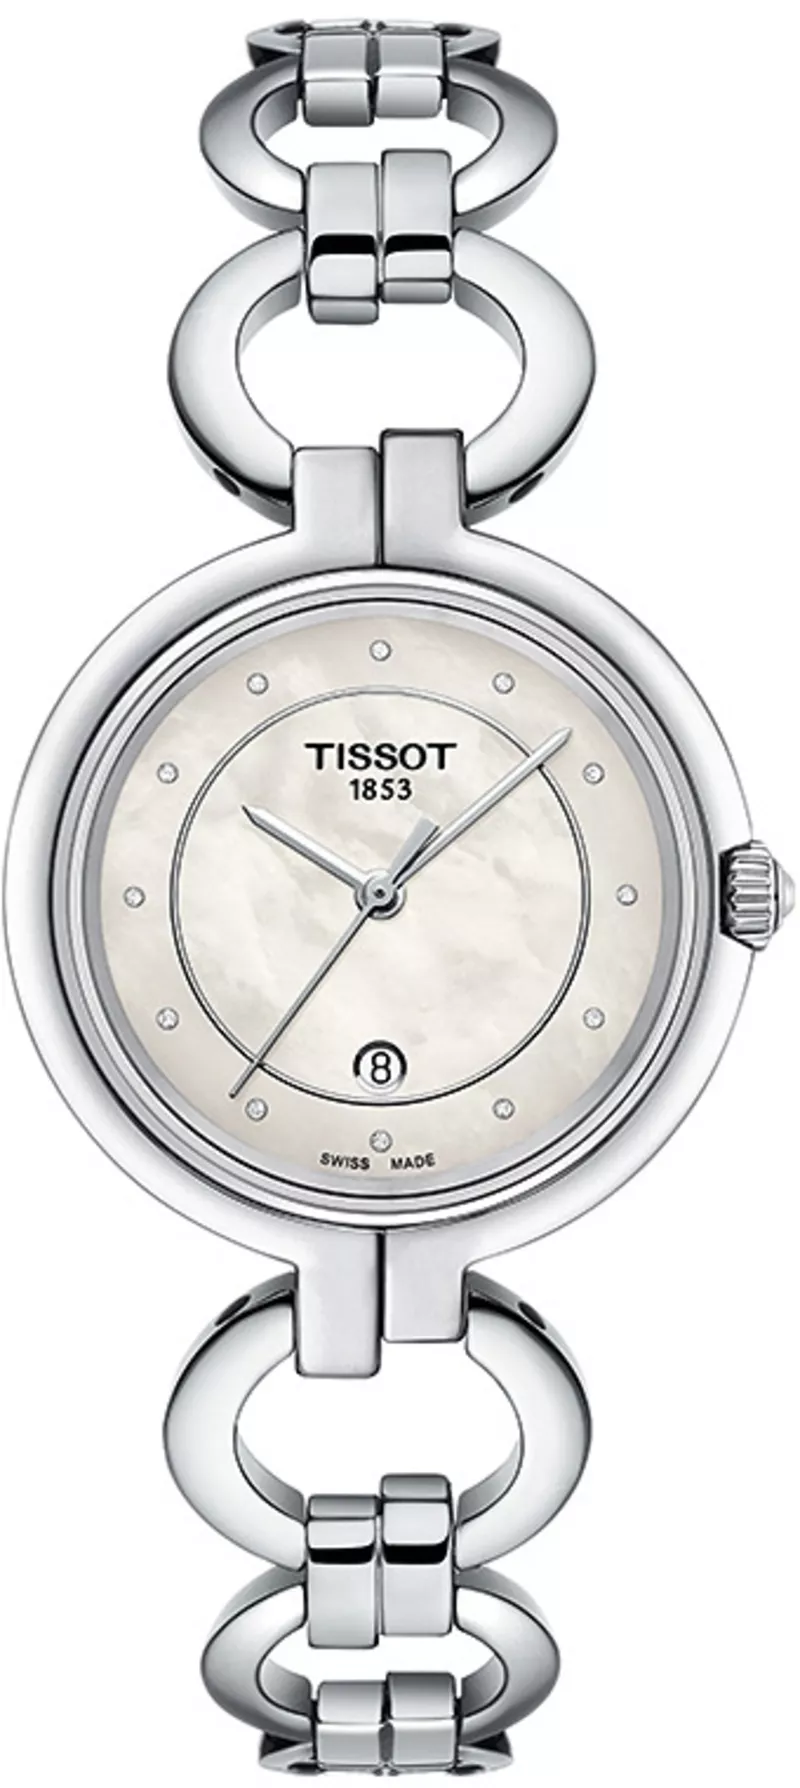 Часы Tissot T094.210.11.116.00